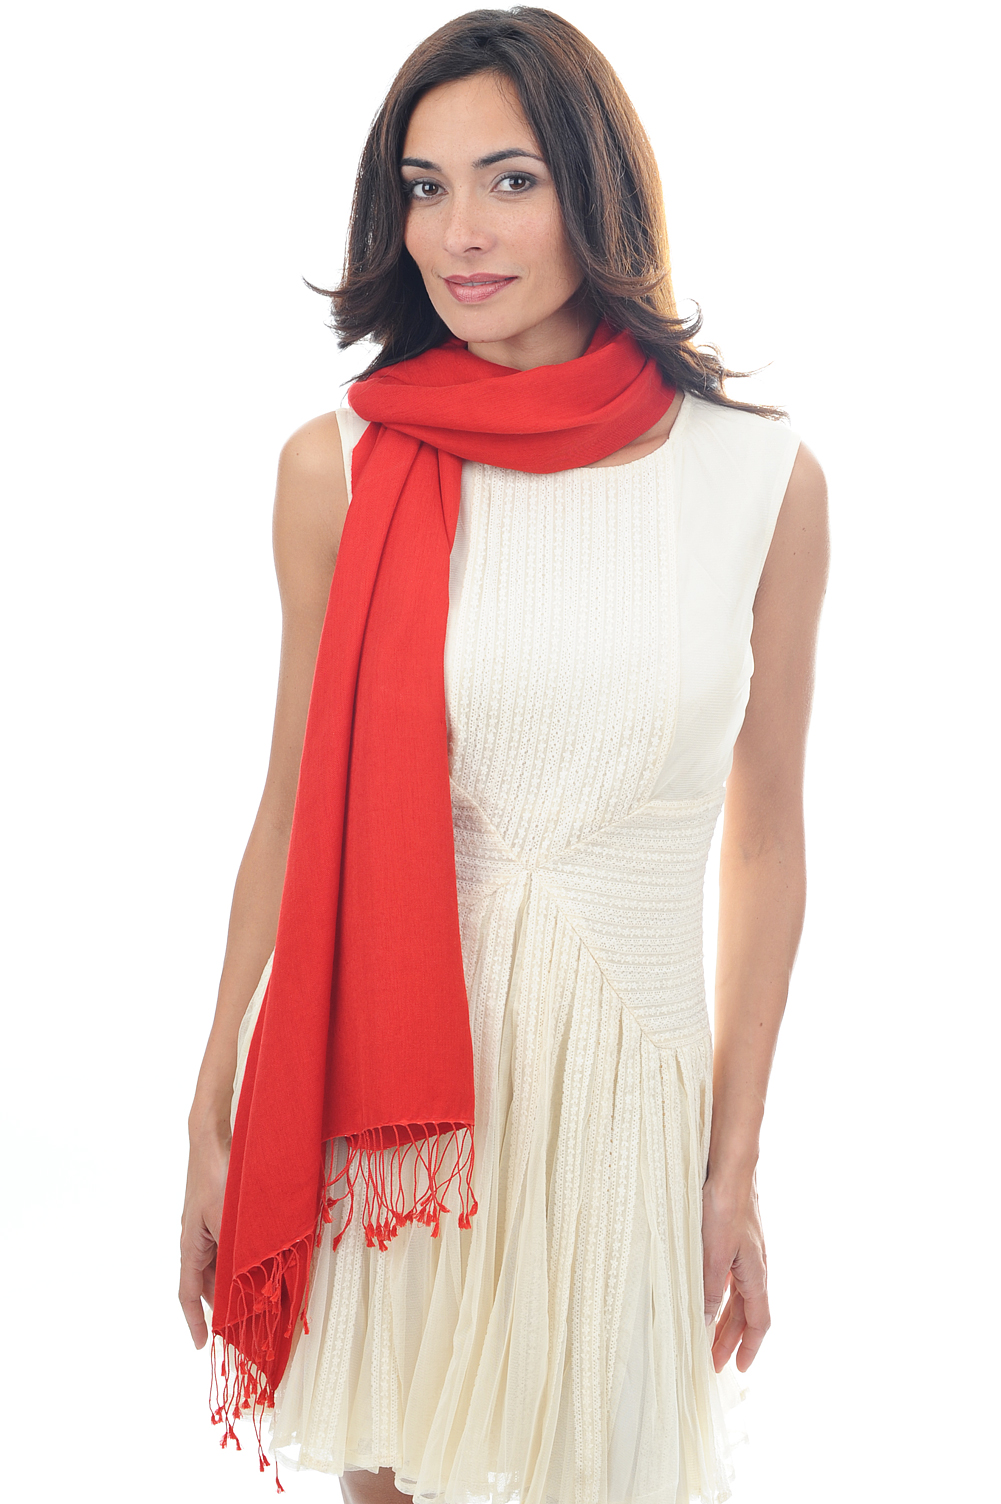 Cachemire et Soie pull femme platine rouge franc 201 cm x 71 cm